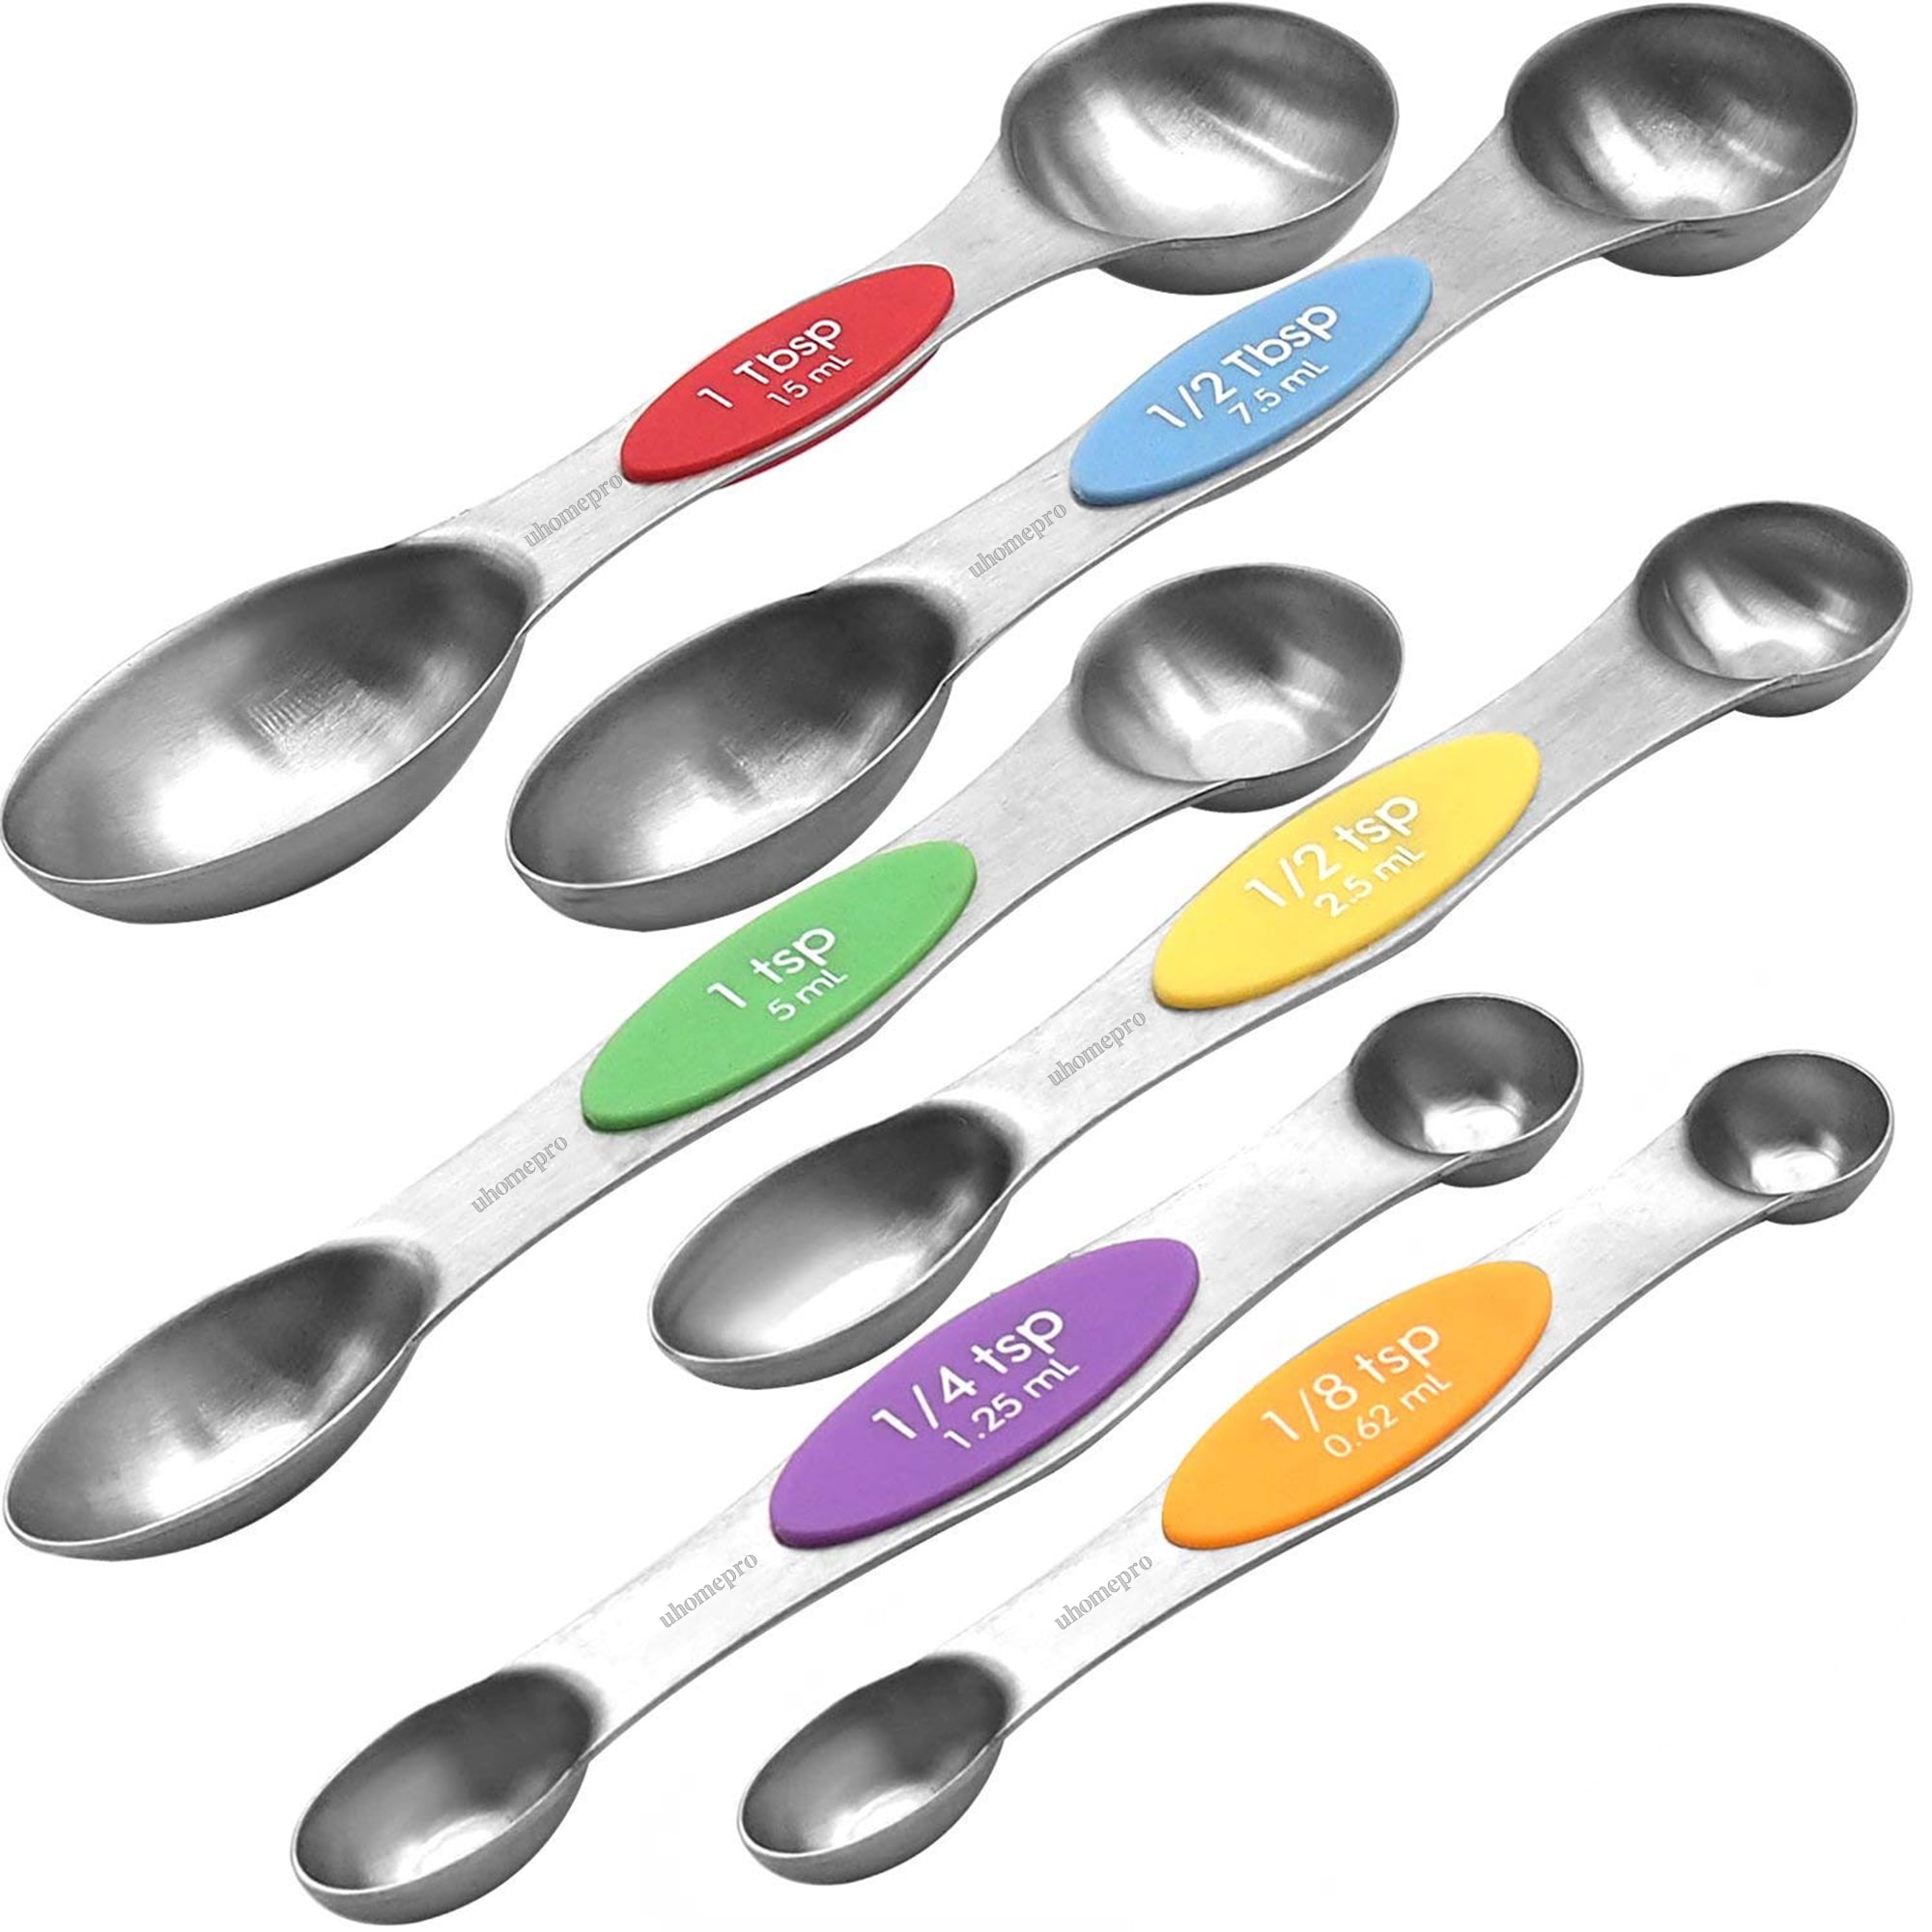 Magnetic Stainless Steel Measuring Spoons - Set of 6 Metal